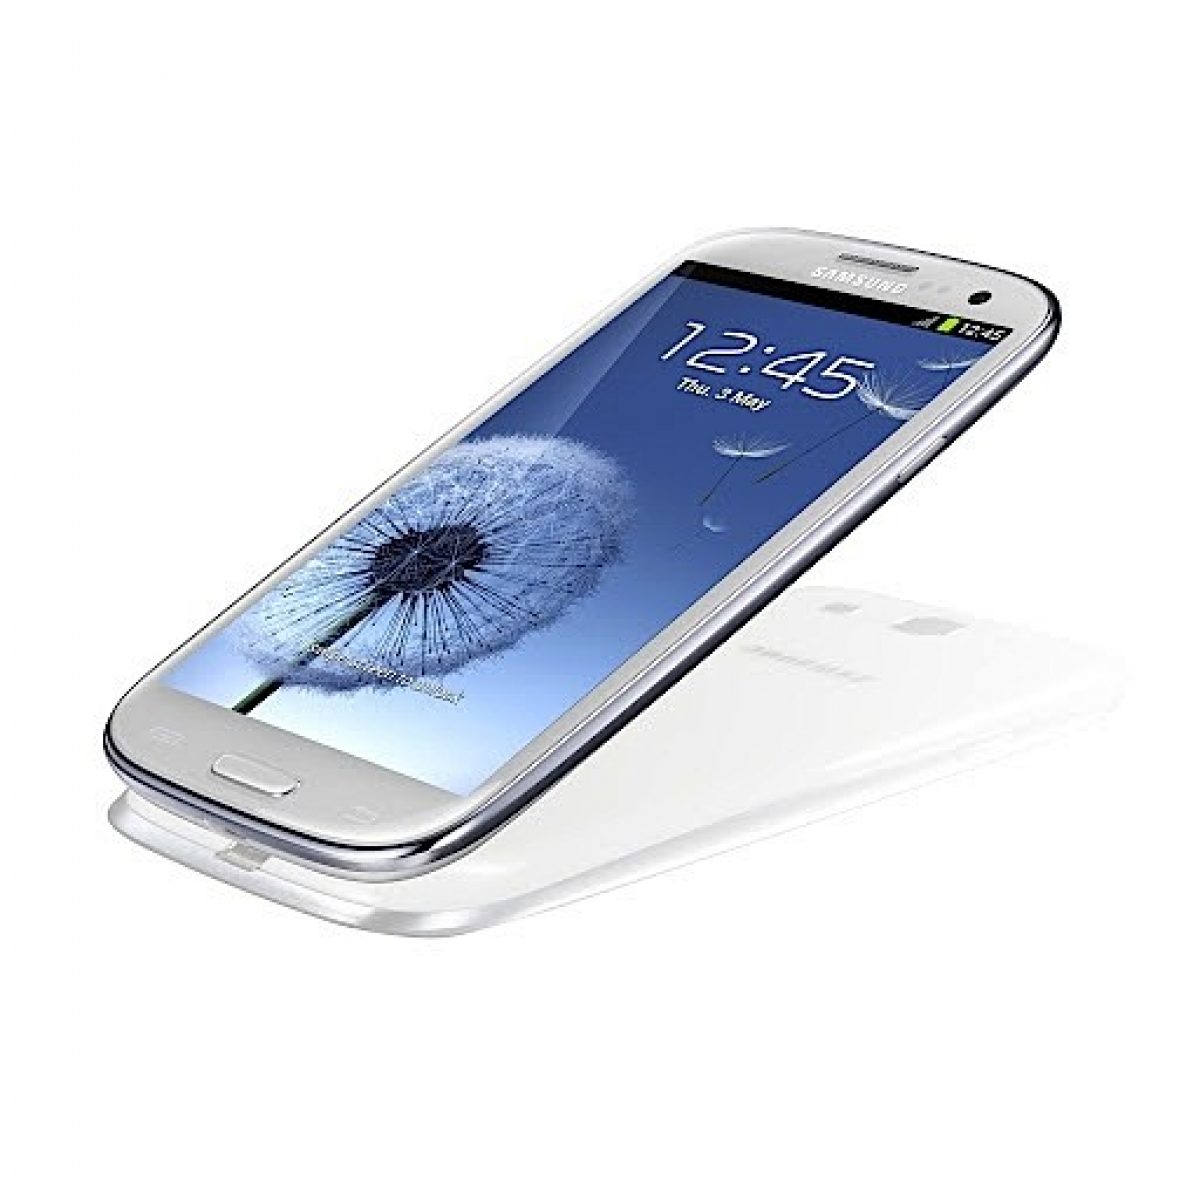 Free Mobile : Le Samsung S3 pourrait offrir 2 jours d’autonomie en utilisation normale